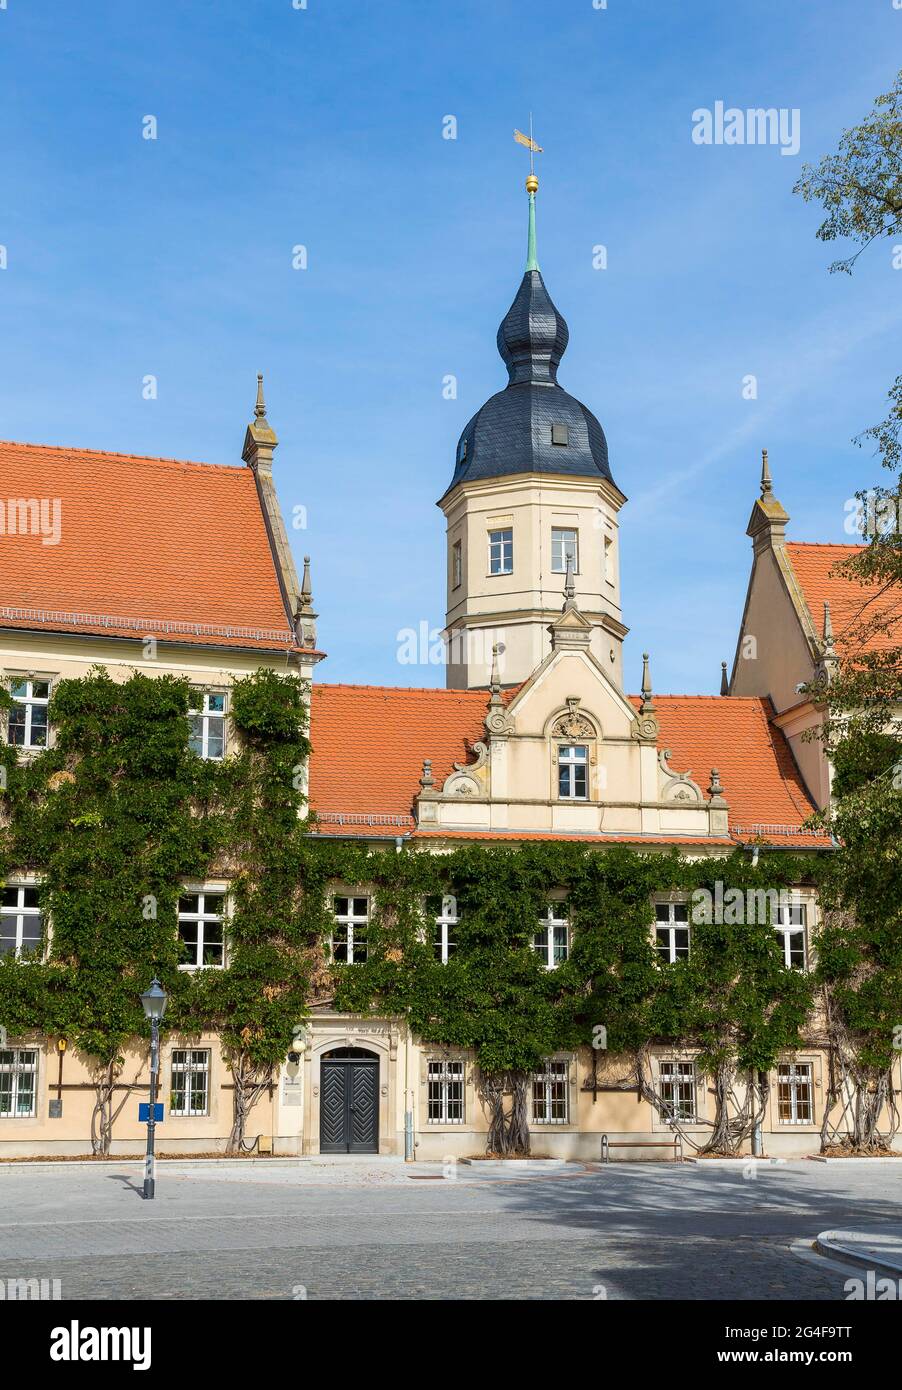 Rathaus mit Rathausturm, Riesa, Sachsen, Deutschland Stockfoto